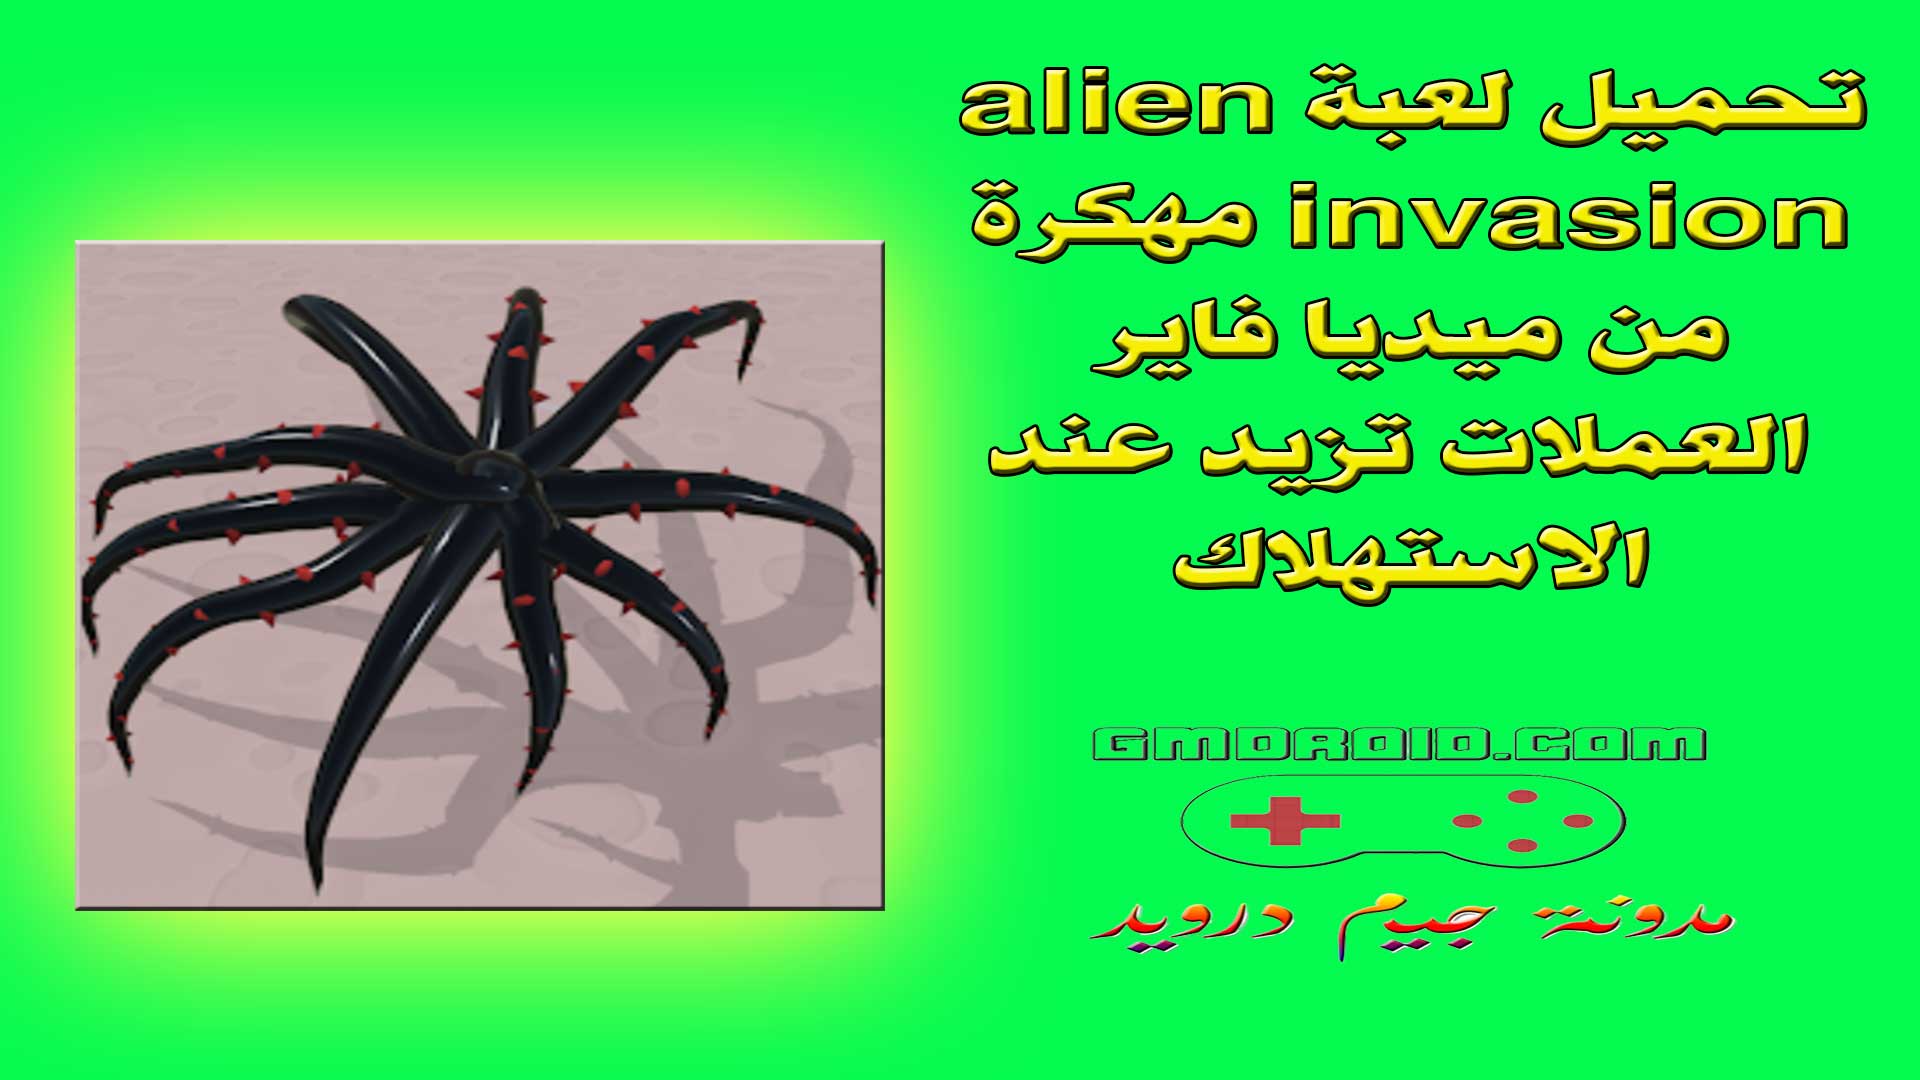 تحميل لعبة alien invasion مهكرة من ميديا فاير احدث اصدار